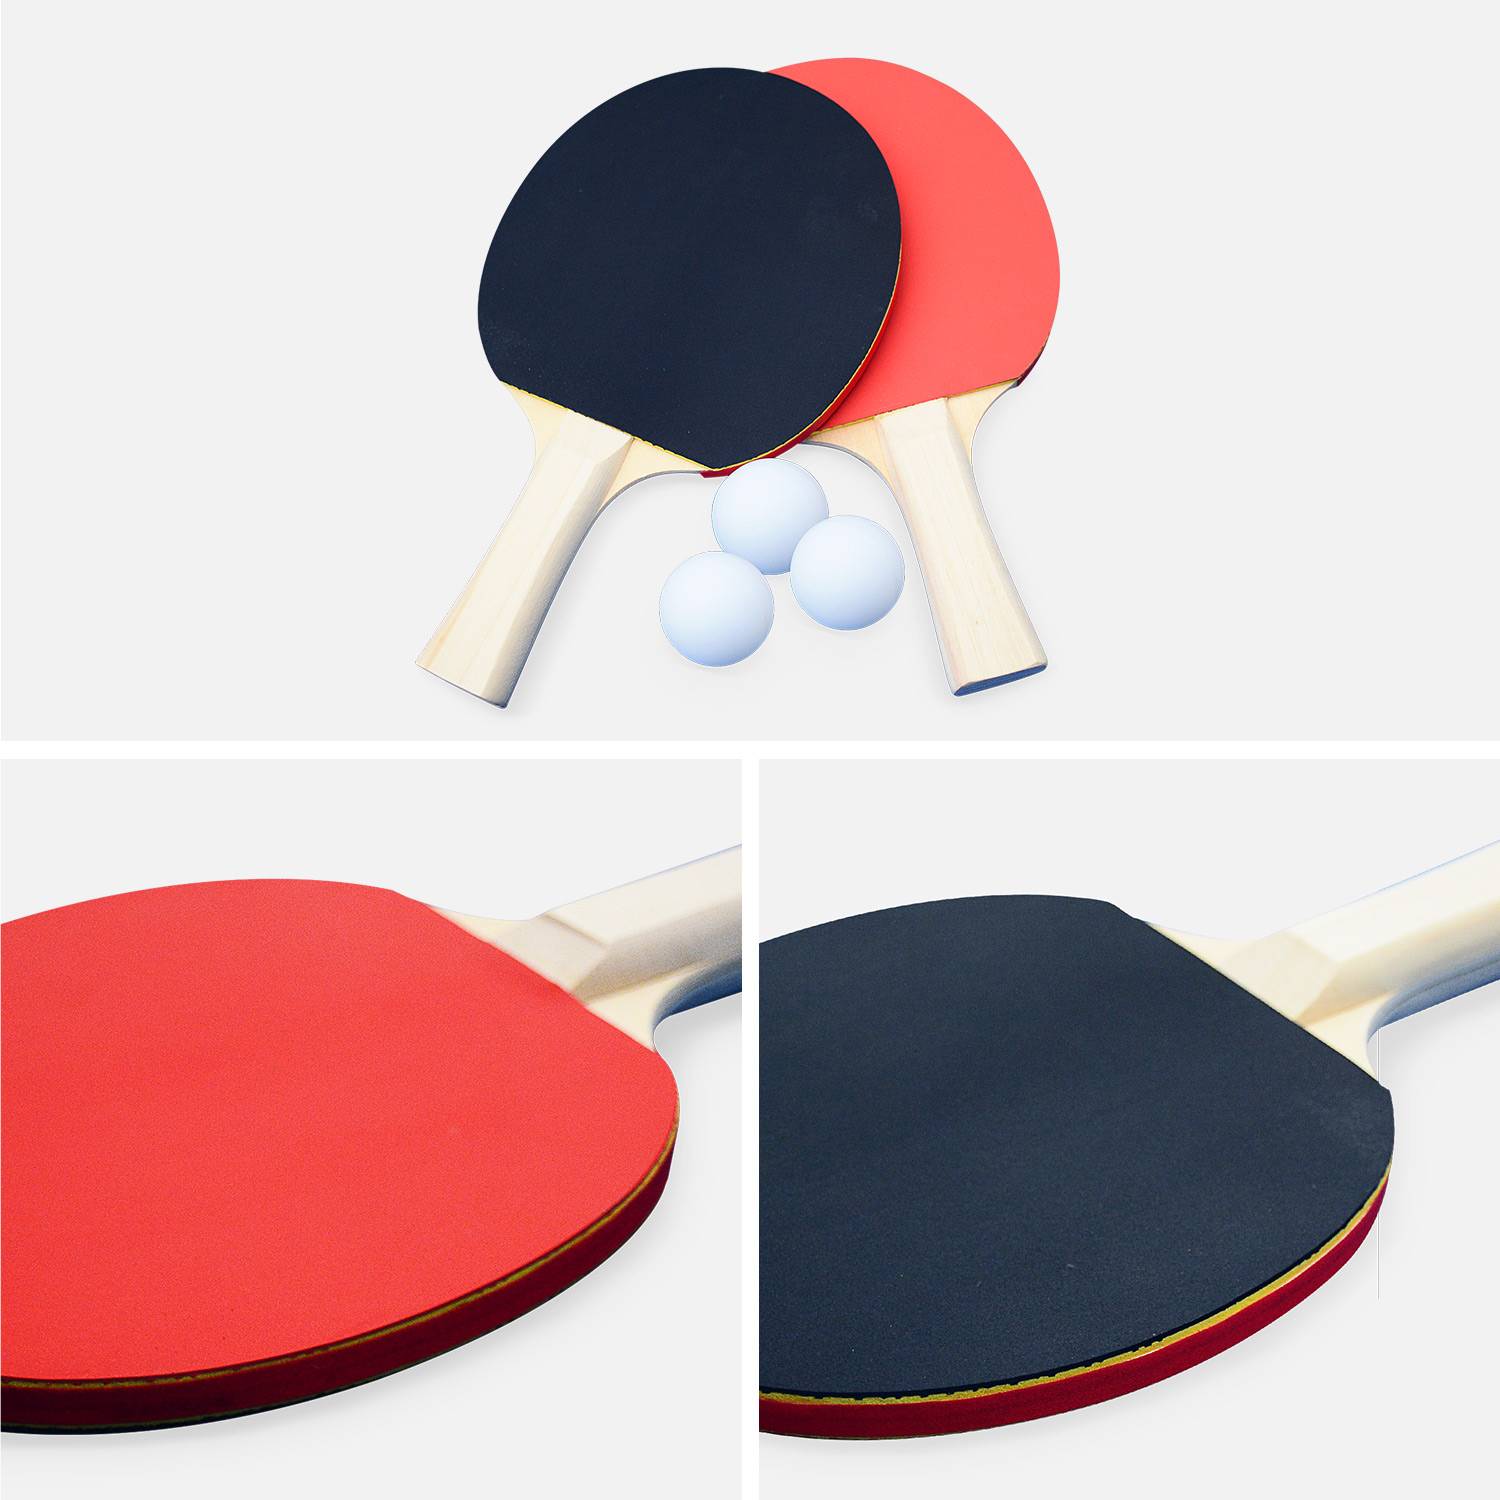 Blauwe pingpongtafel - Outdoor - Met 2 batjes en 3 ballen - Met PVC hoes - Voor buitengebruik - Tafeltennissport | sweeek